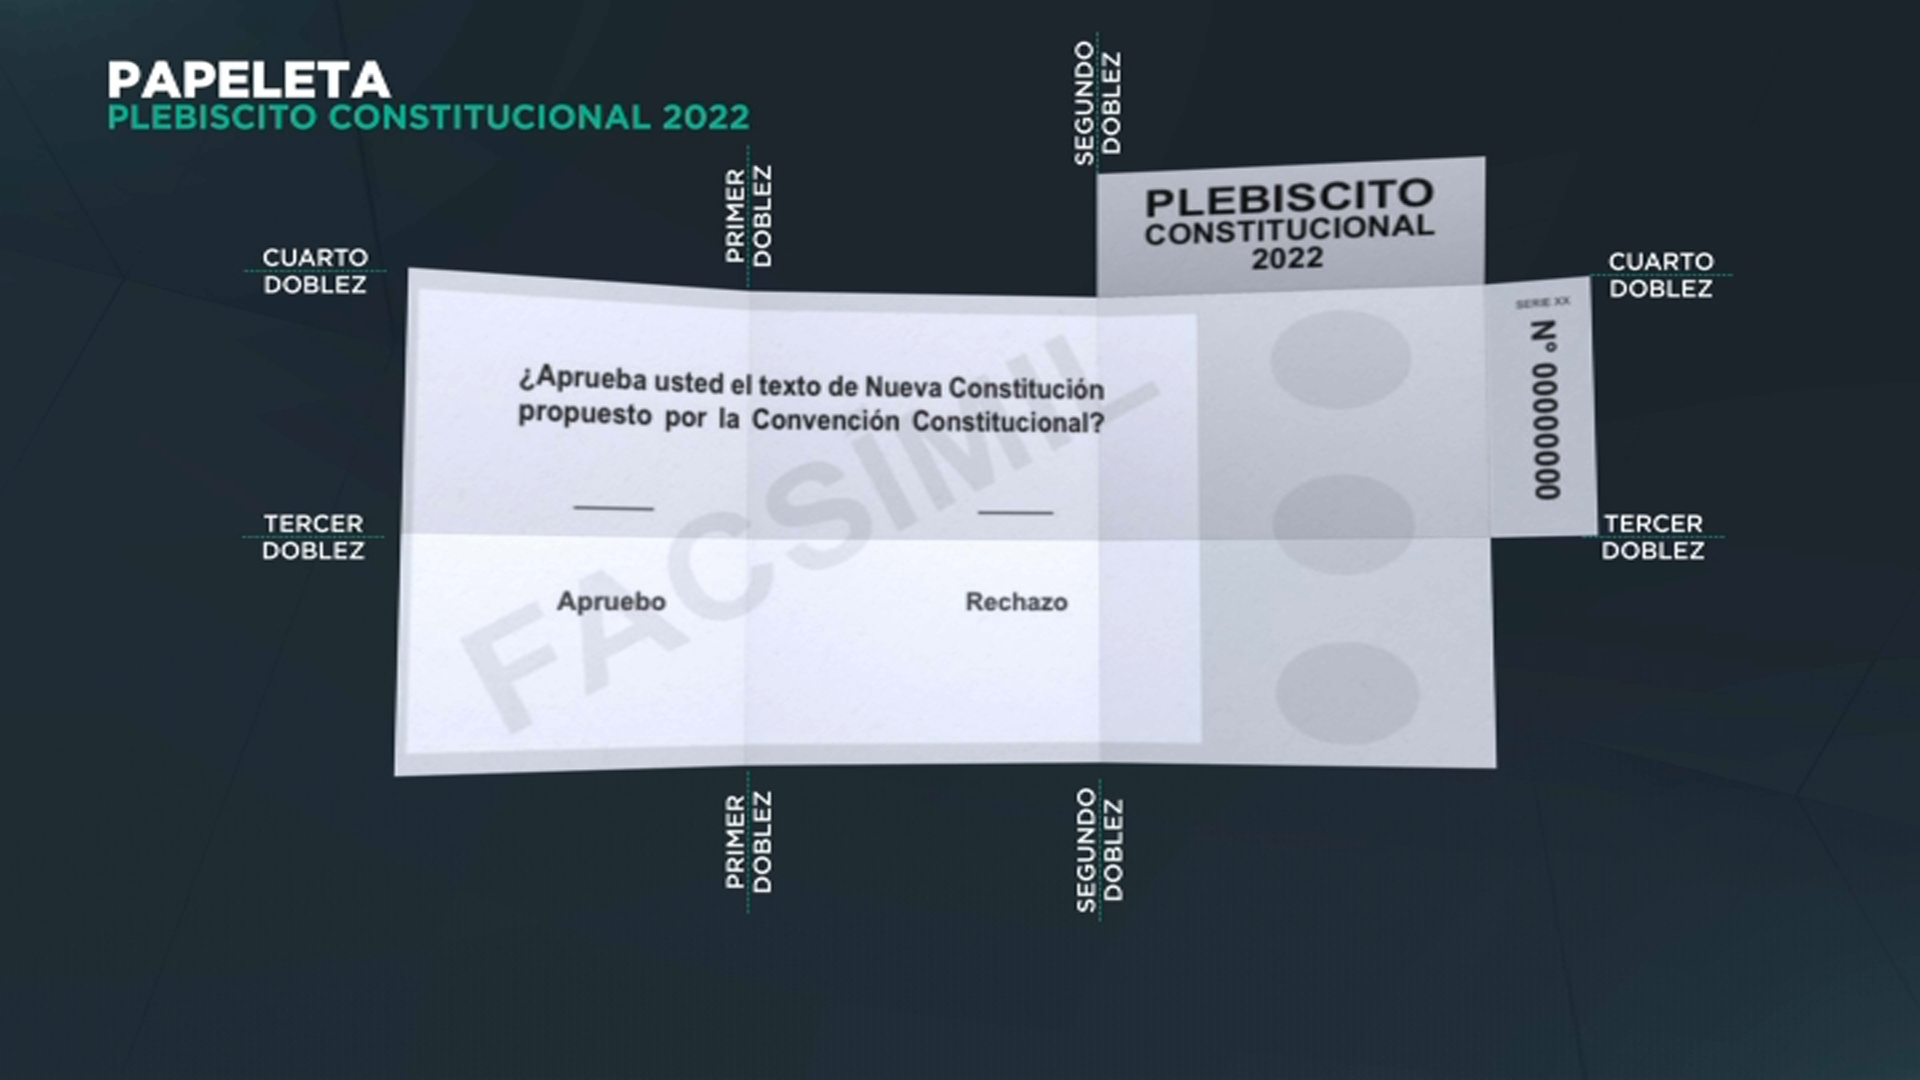 Plebiscito 2022 Cómo es el voto del Plebiscito 2022 Meganoticias